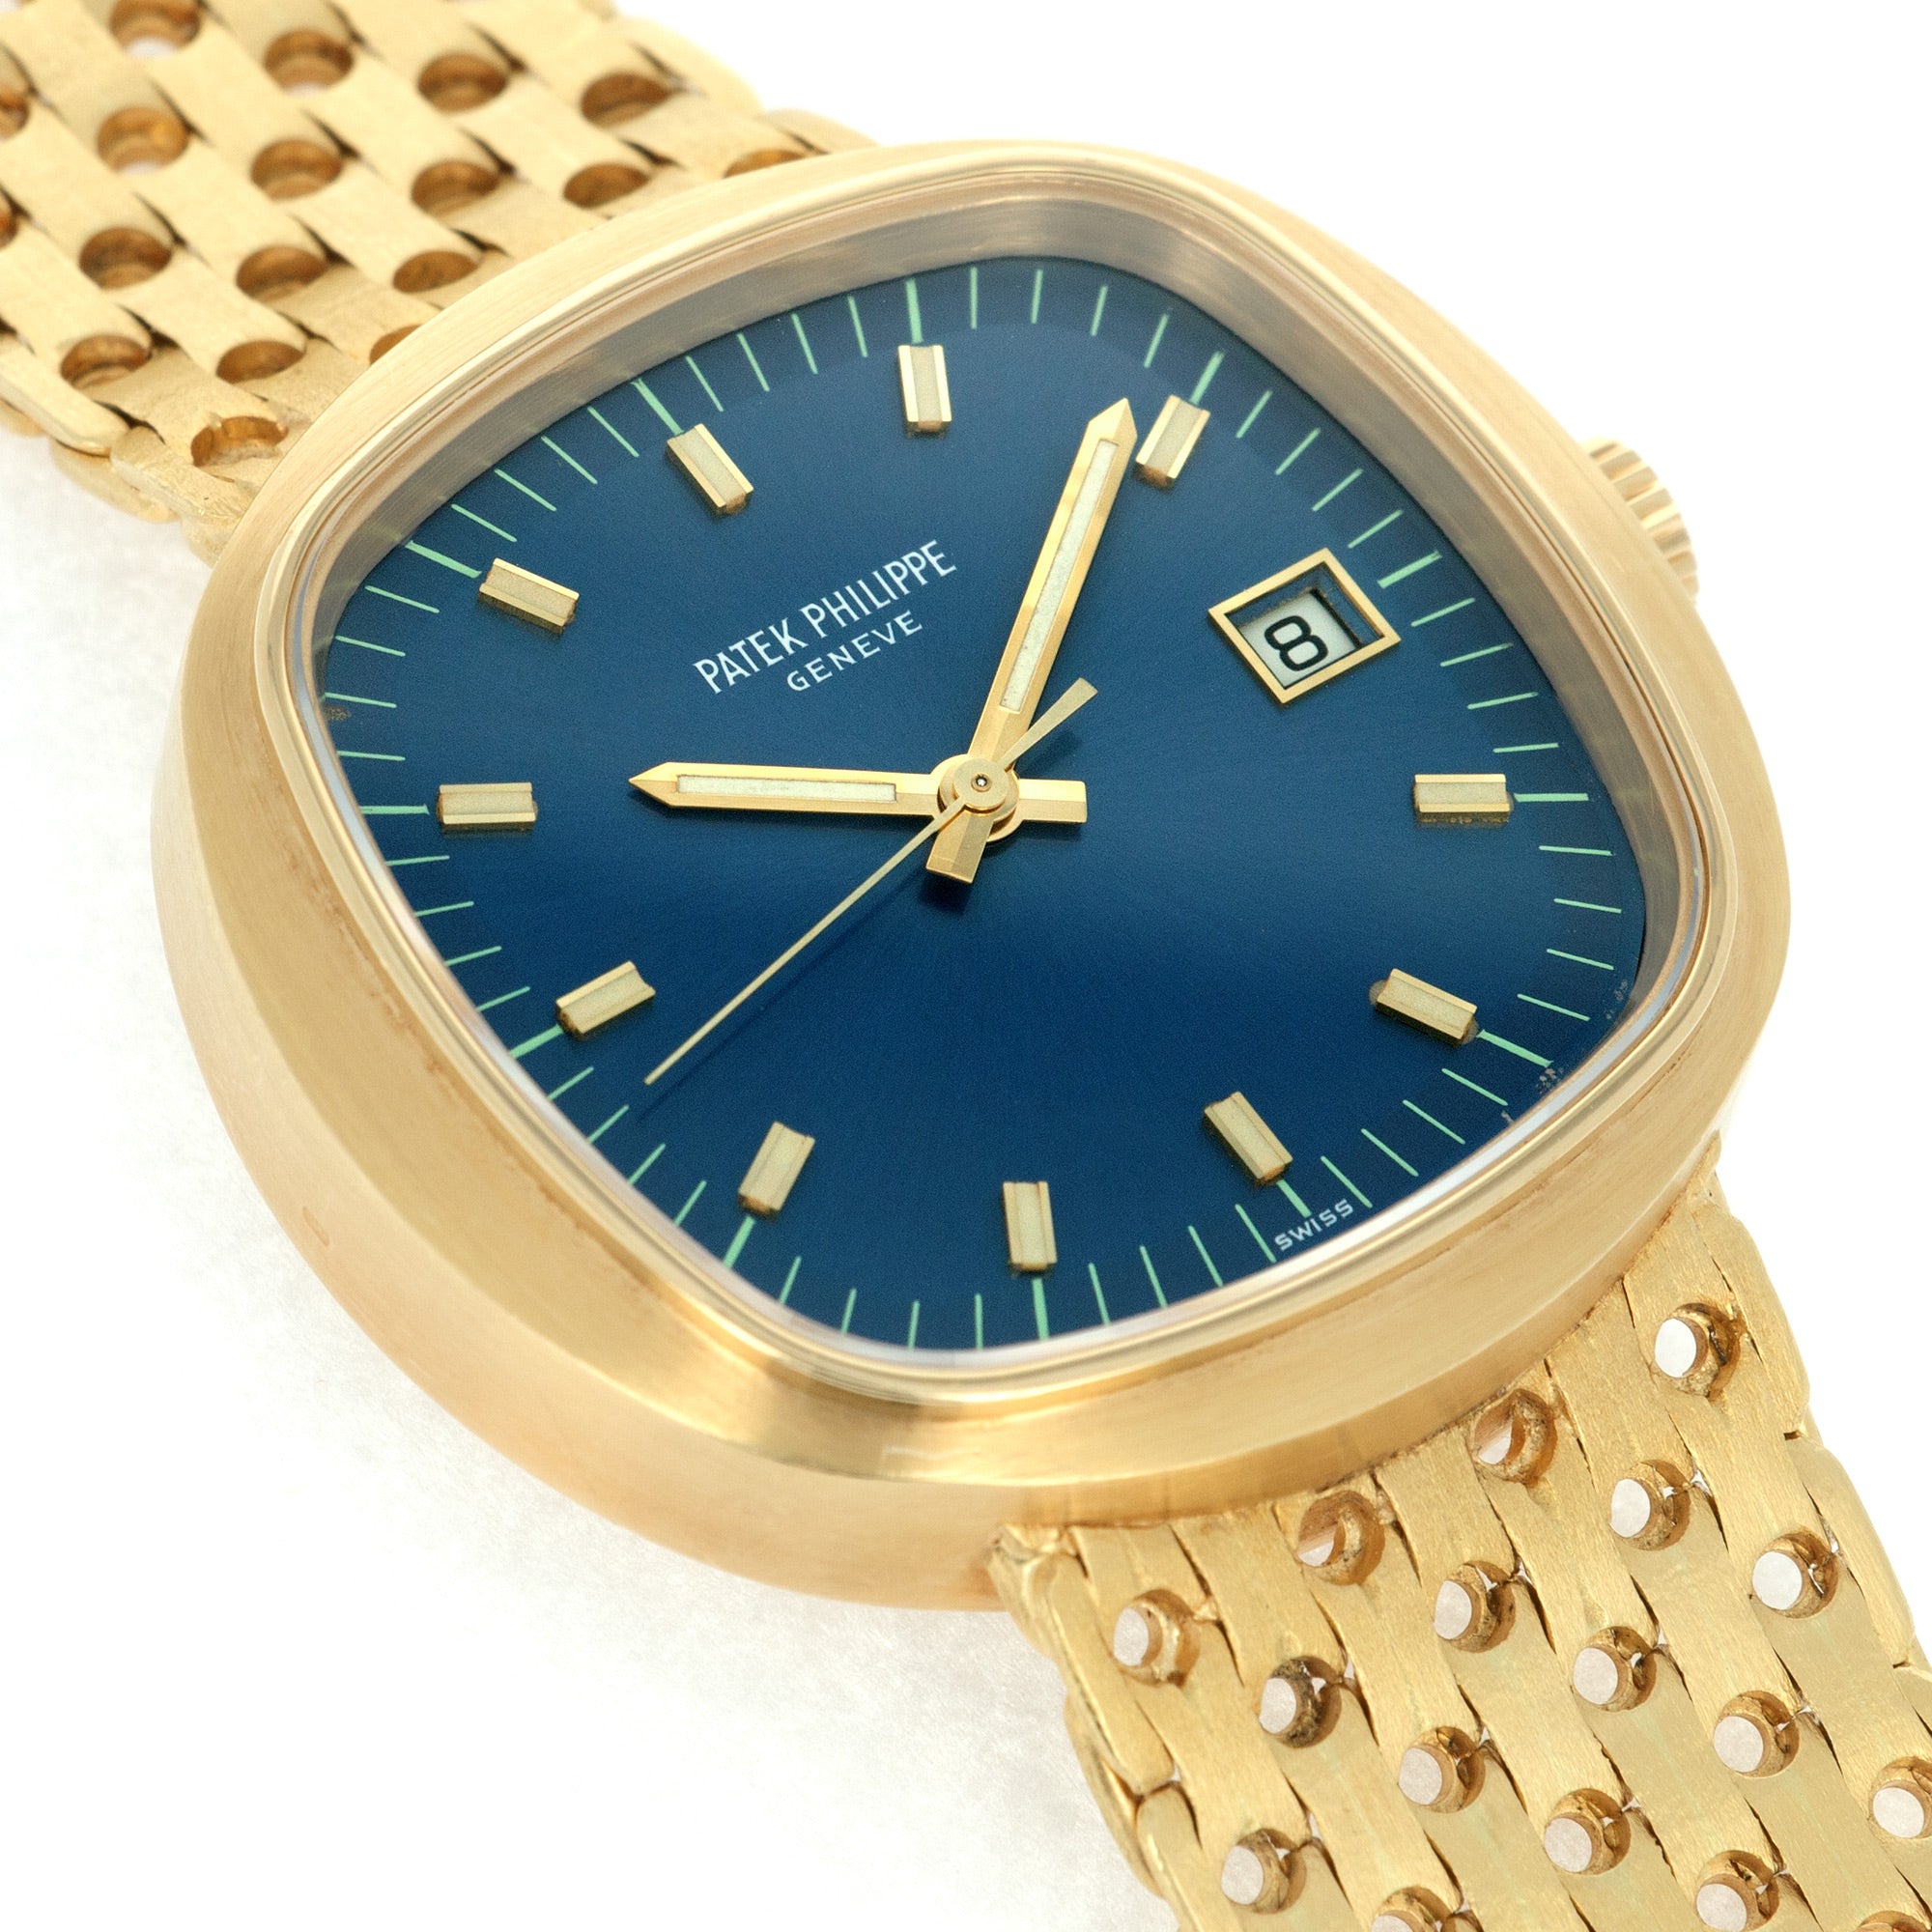 Patek Philippe - Patek Philippe Yellow Gold Beta 21 Watch Ref. 3587 - The Keystone Watches